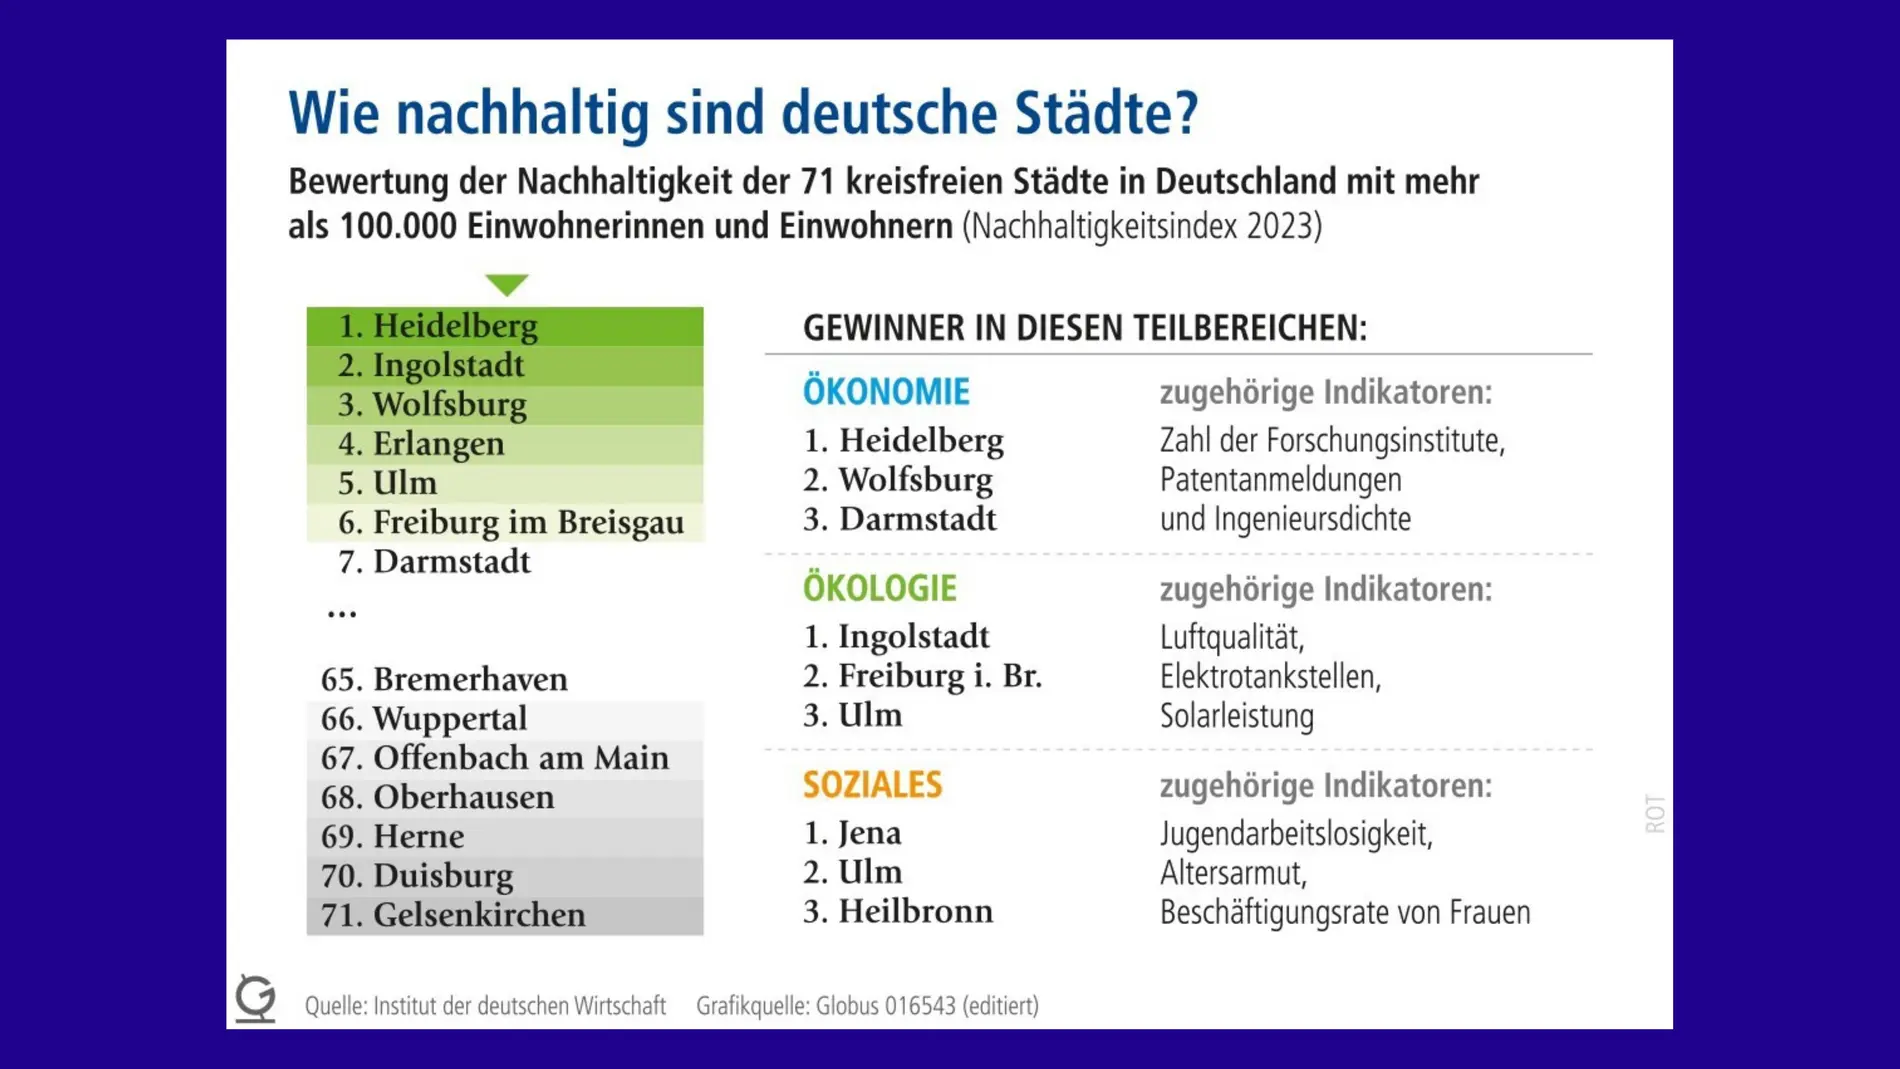 Grafik "Wie nachhaltig sind deutsche Städte?" unterscheidet 71 kreisfreie Städte